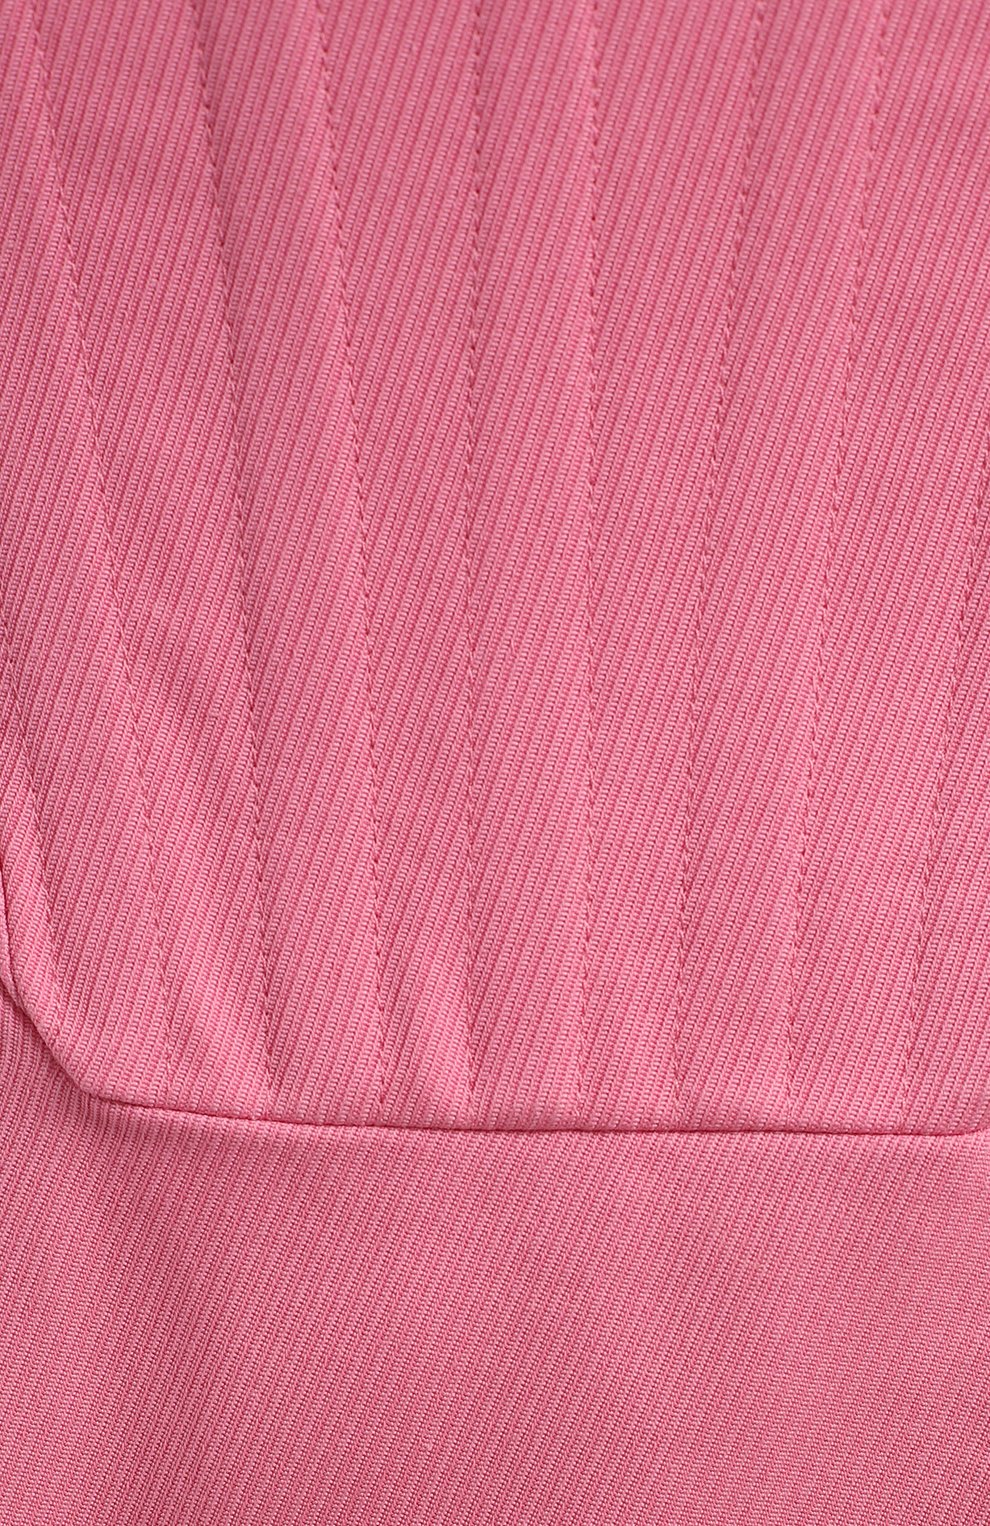 Платье из хлопка и льна | Giuseppe di Morabito | Розовый - 3